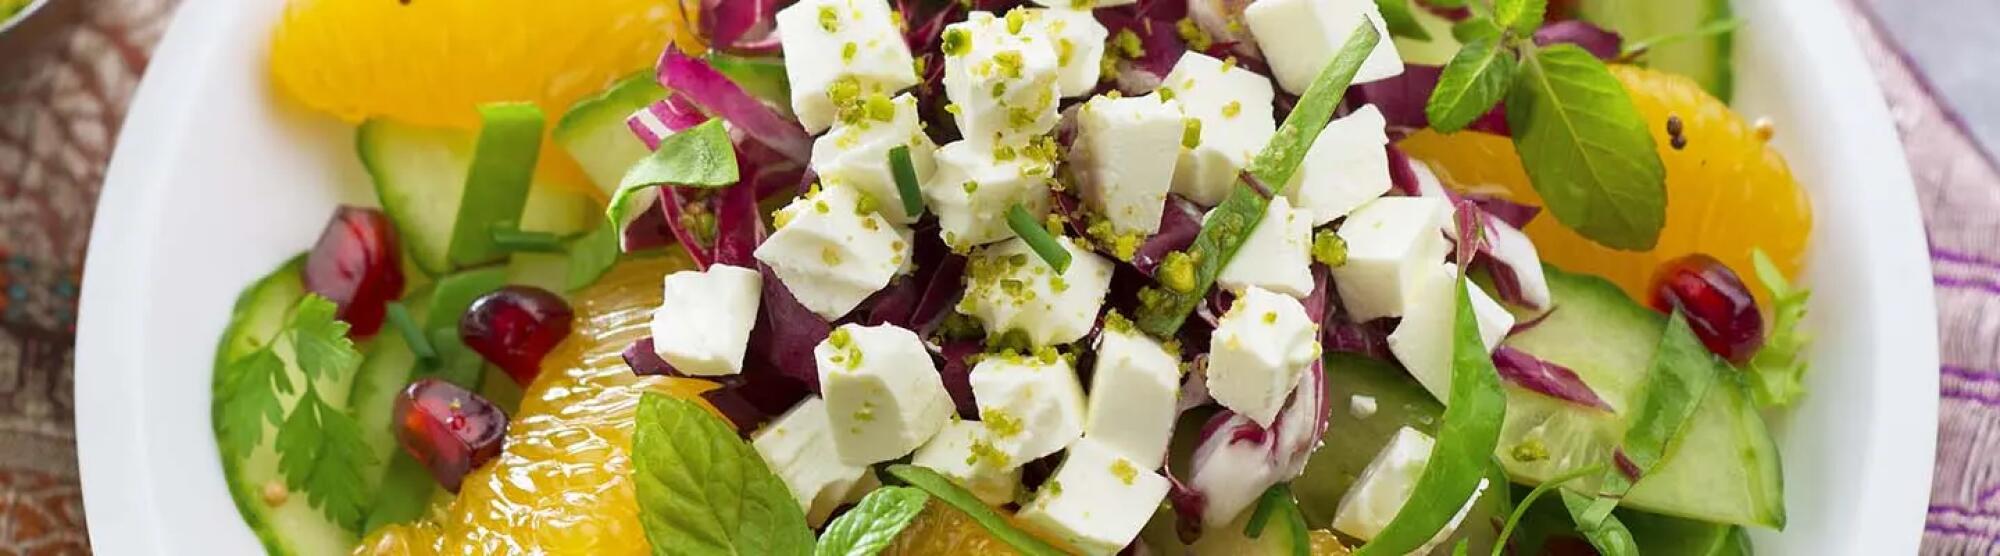 Recette : Salade orientale au fromage frais